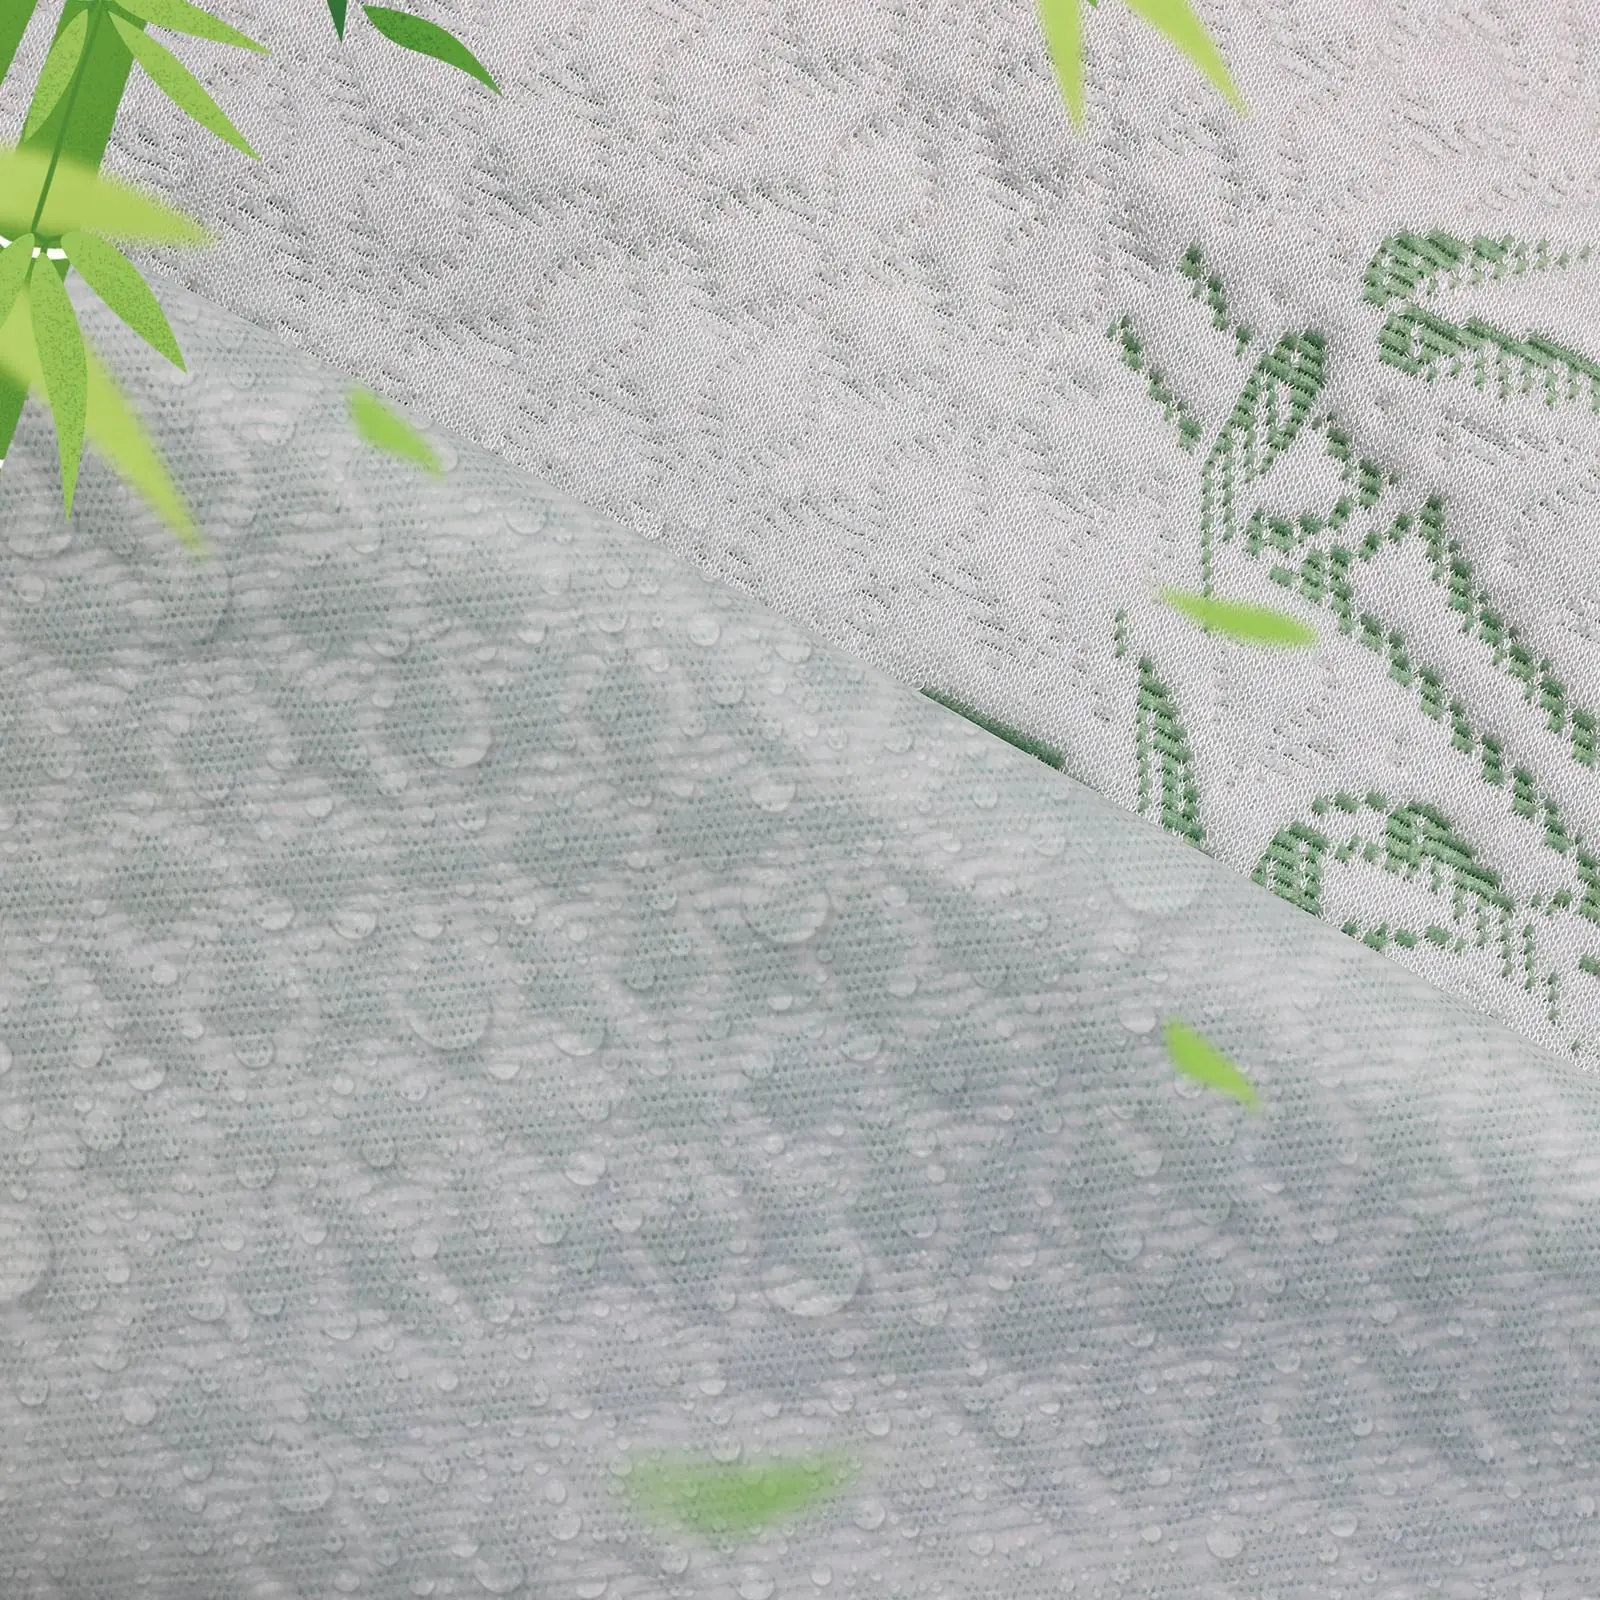 Vendita calda della fabbrica di bambù Jacquard materasso impermeabile ticchettio tessuti per la casa in laminato tessuto Tpu